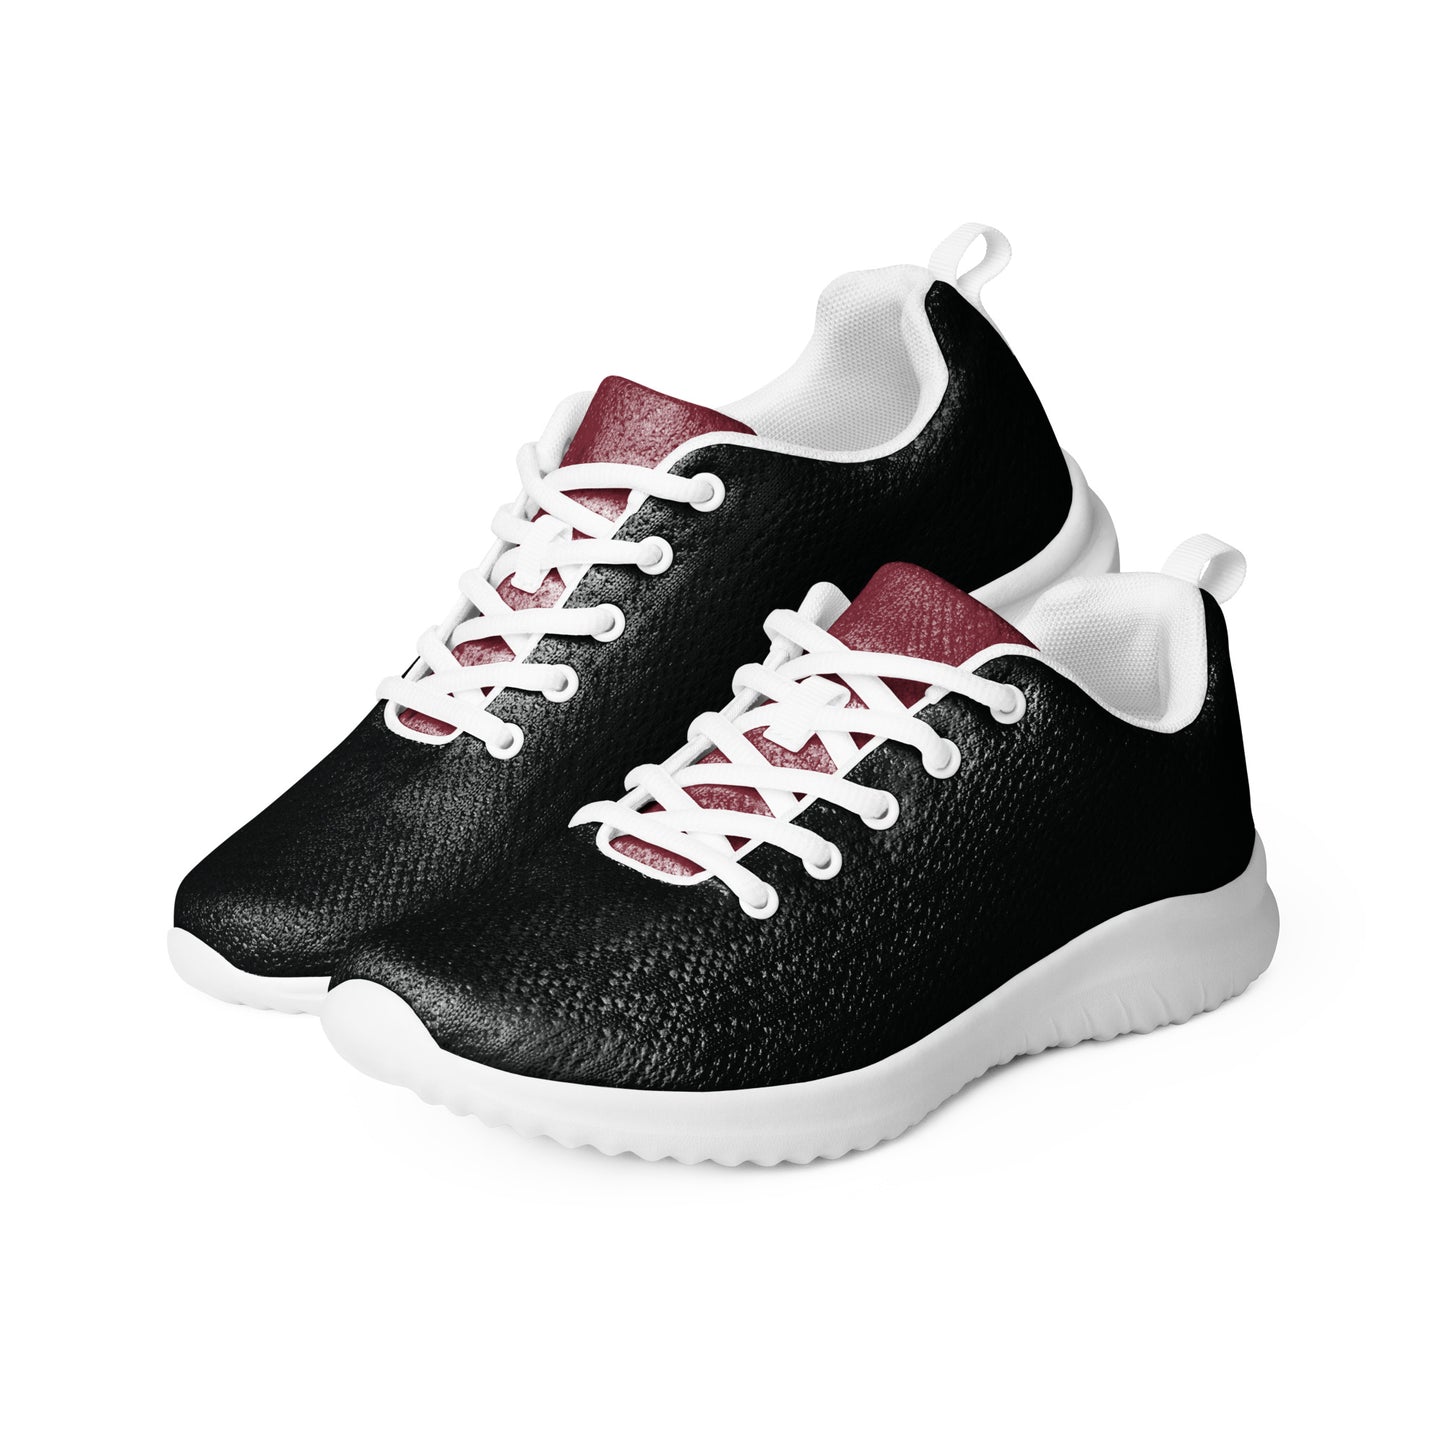 FYD Women’s Athletic Sneakers in red & black colorblock